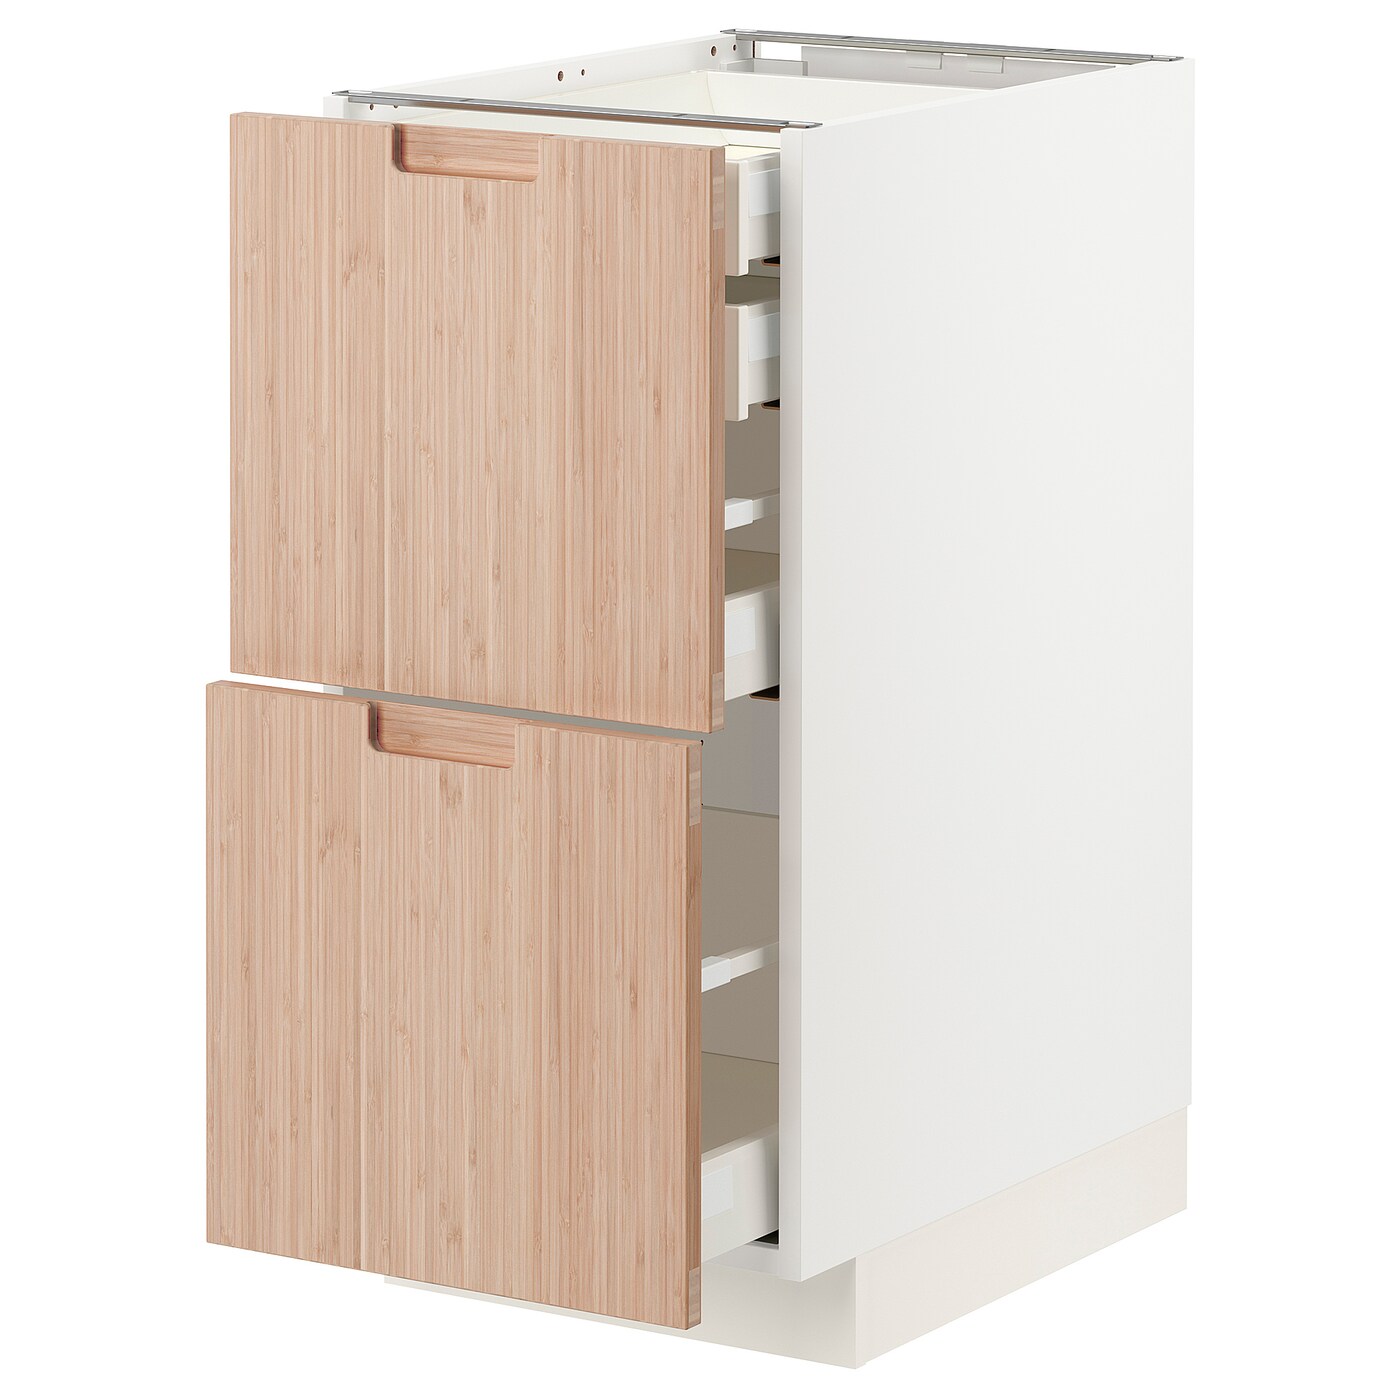 Напольный шкаф  - IKEA METOD MAXIMERA, 88x61,6x40см, белый/светло-коричневый, МЕТОД МАКСИМЕРА ИКЕА